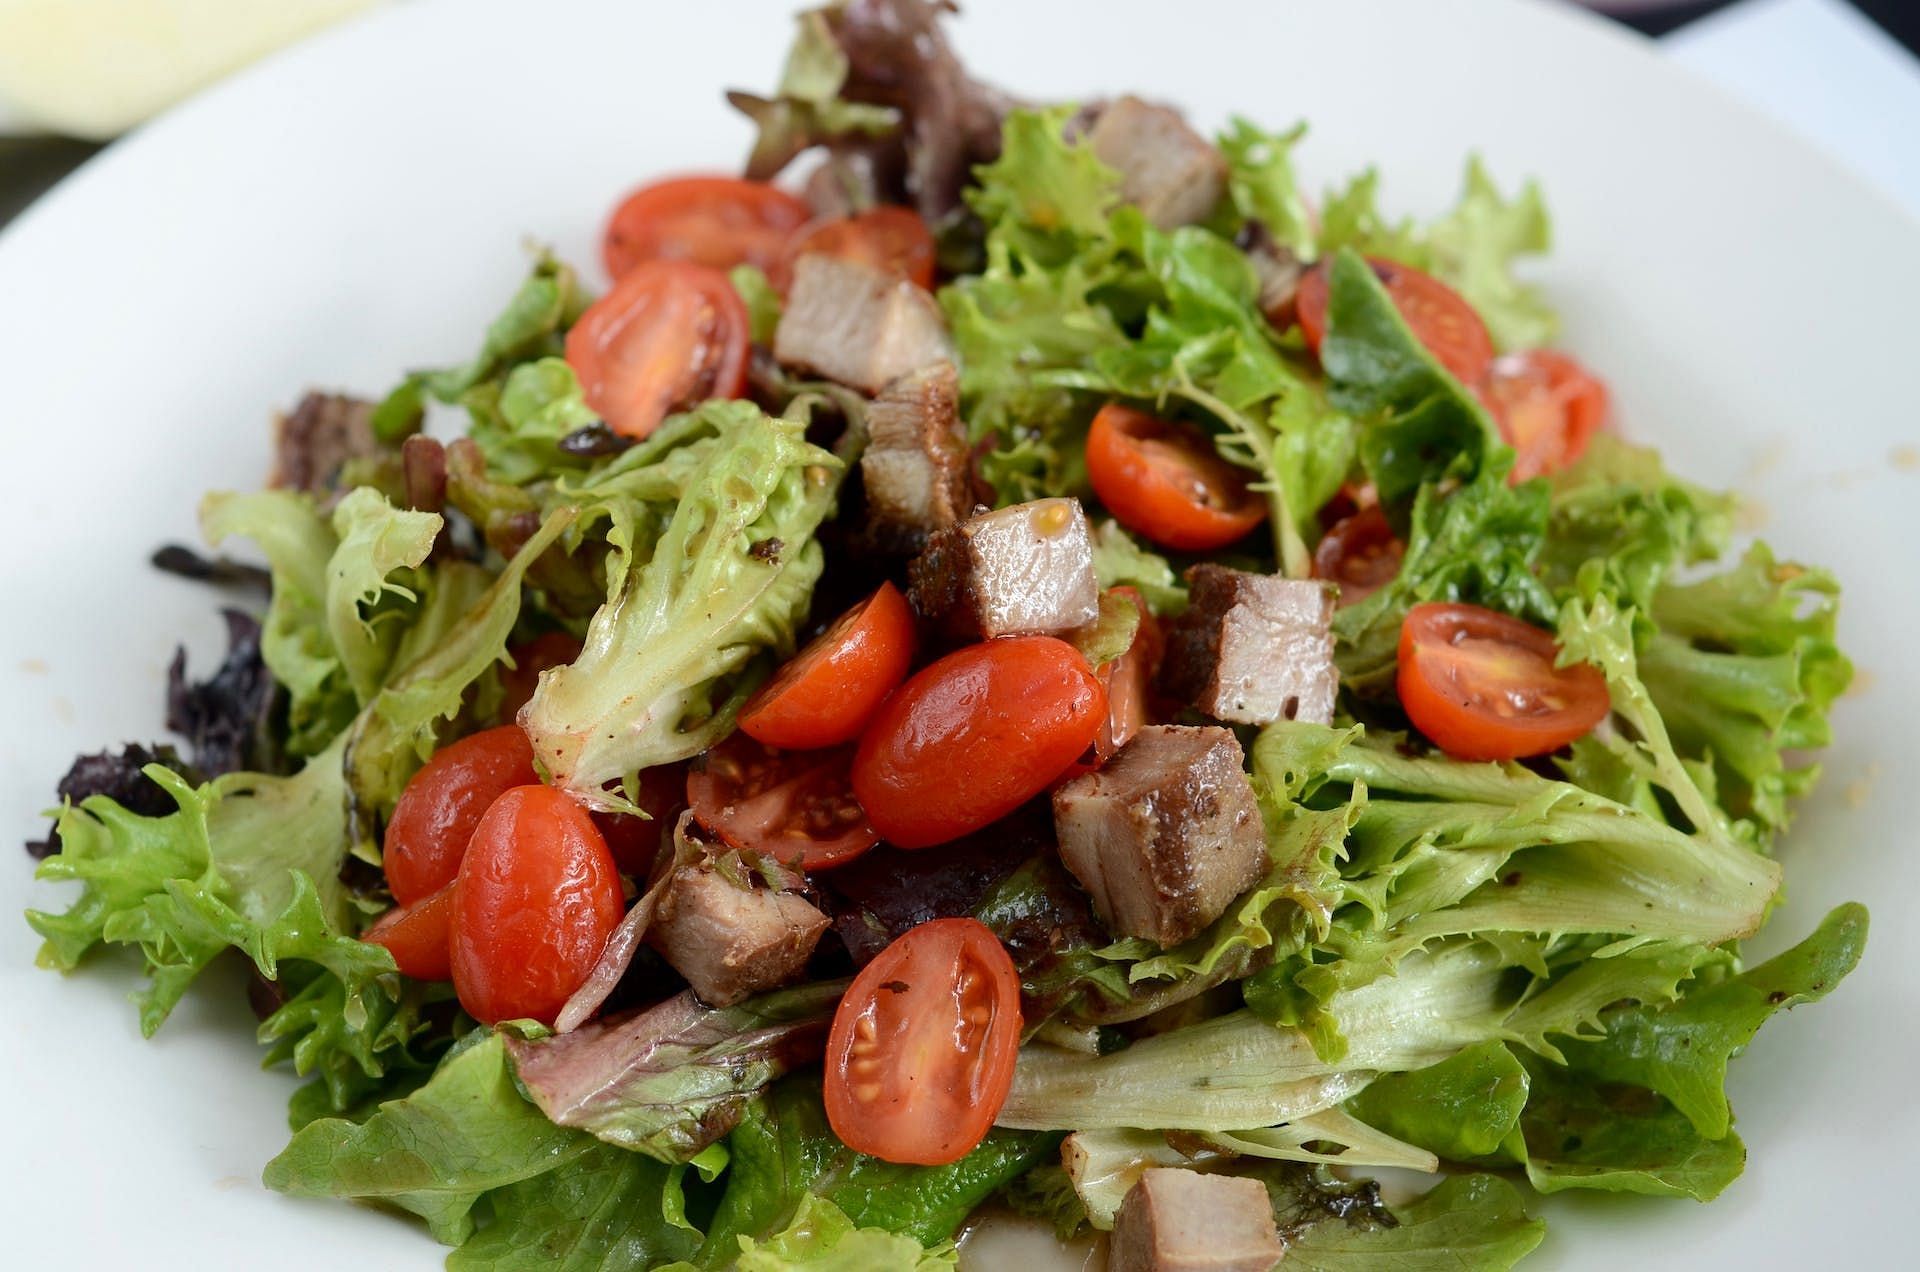 Turkey and veggie salad. (Image credits: Pexels/ Ronmar Lacamiento)